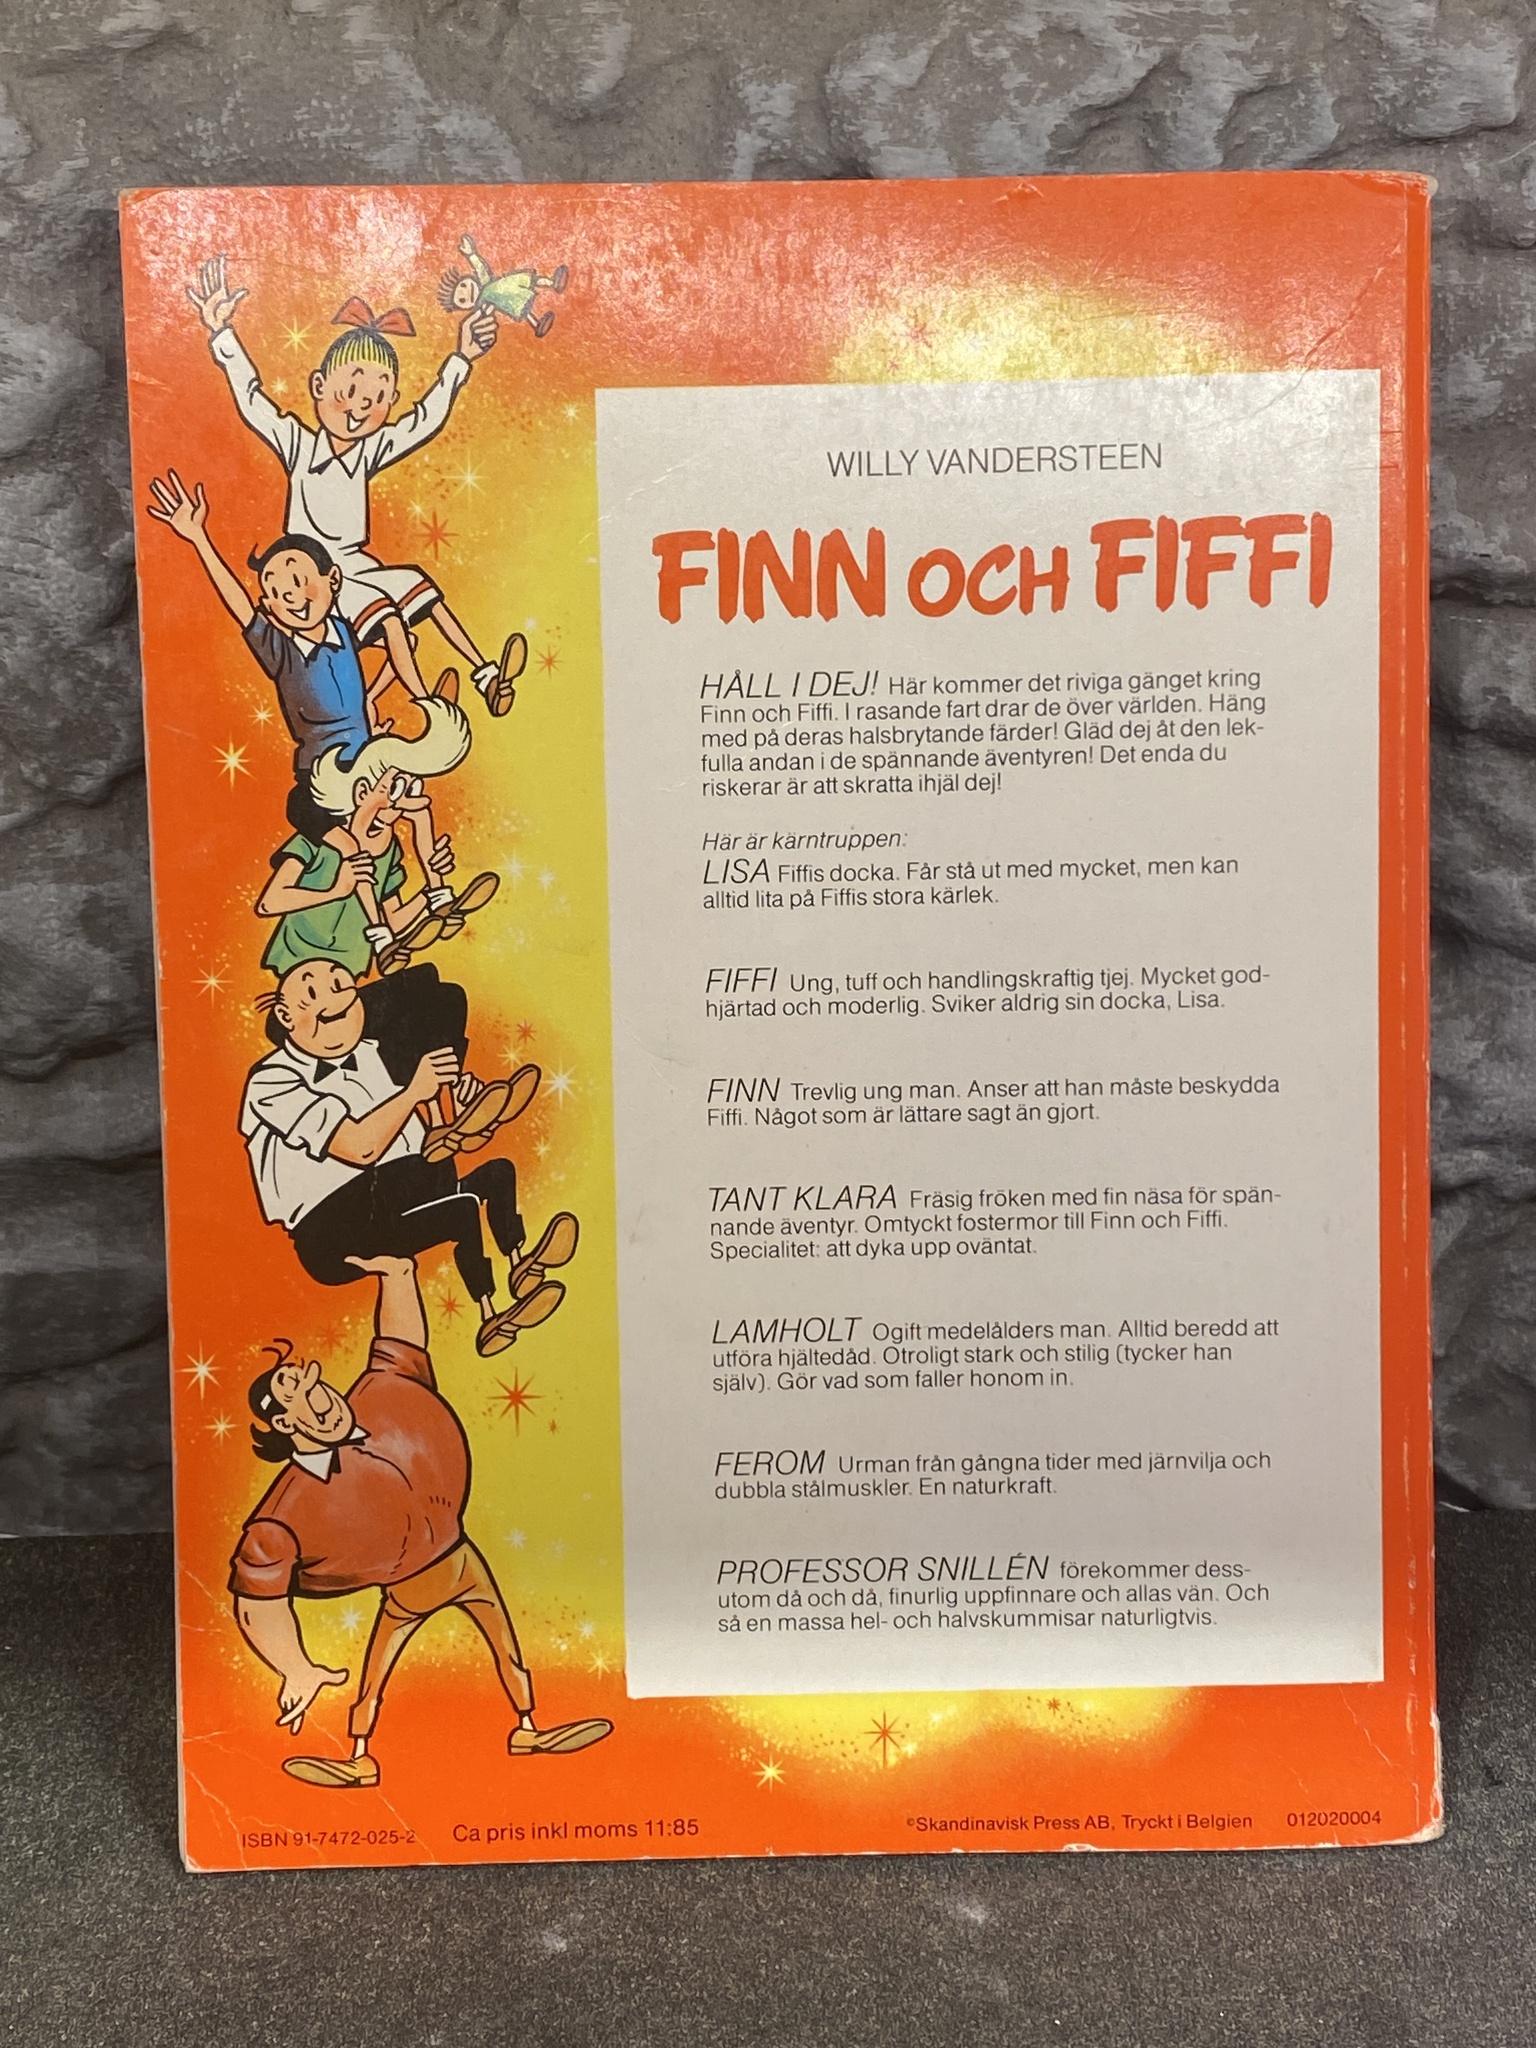 Seriealbum Finn och Fiffi: Djungelblomman av Willy Wandersteen